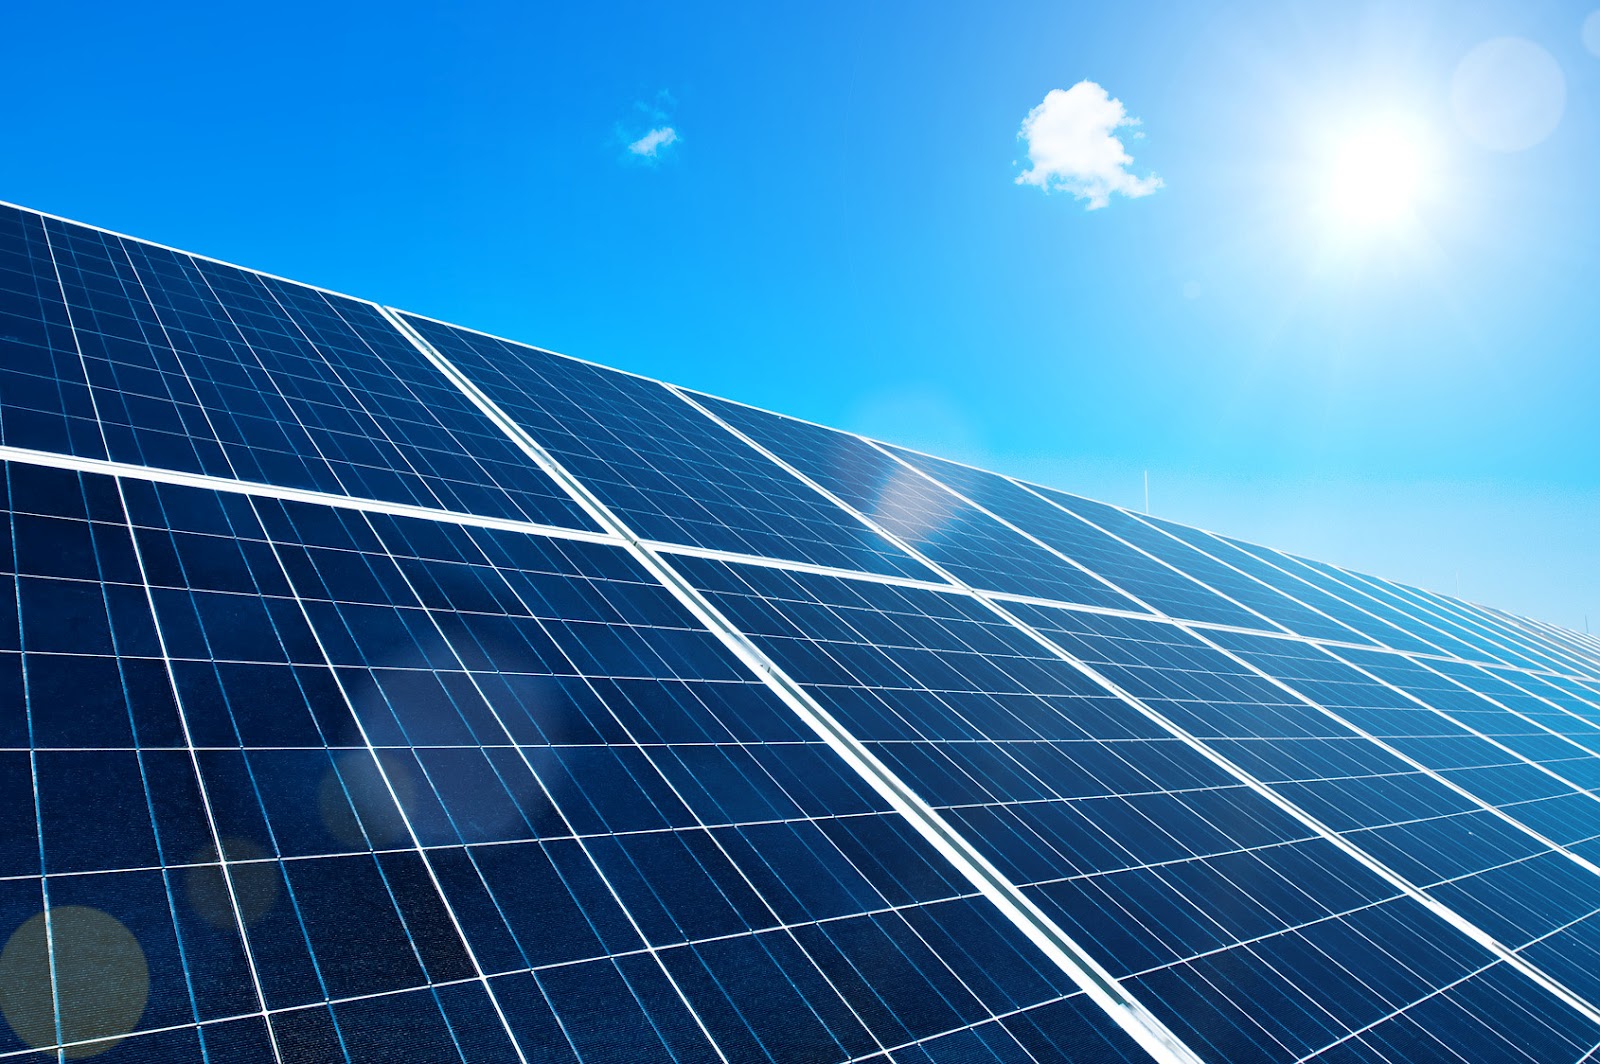 Solar Panel Photovoltaic Energy From Sun Khoirulpage